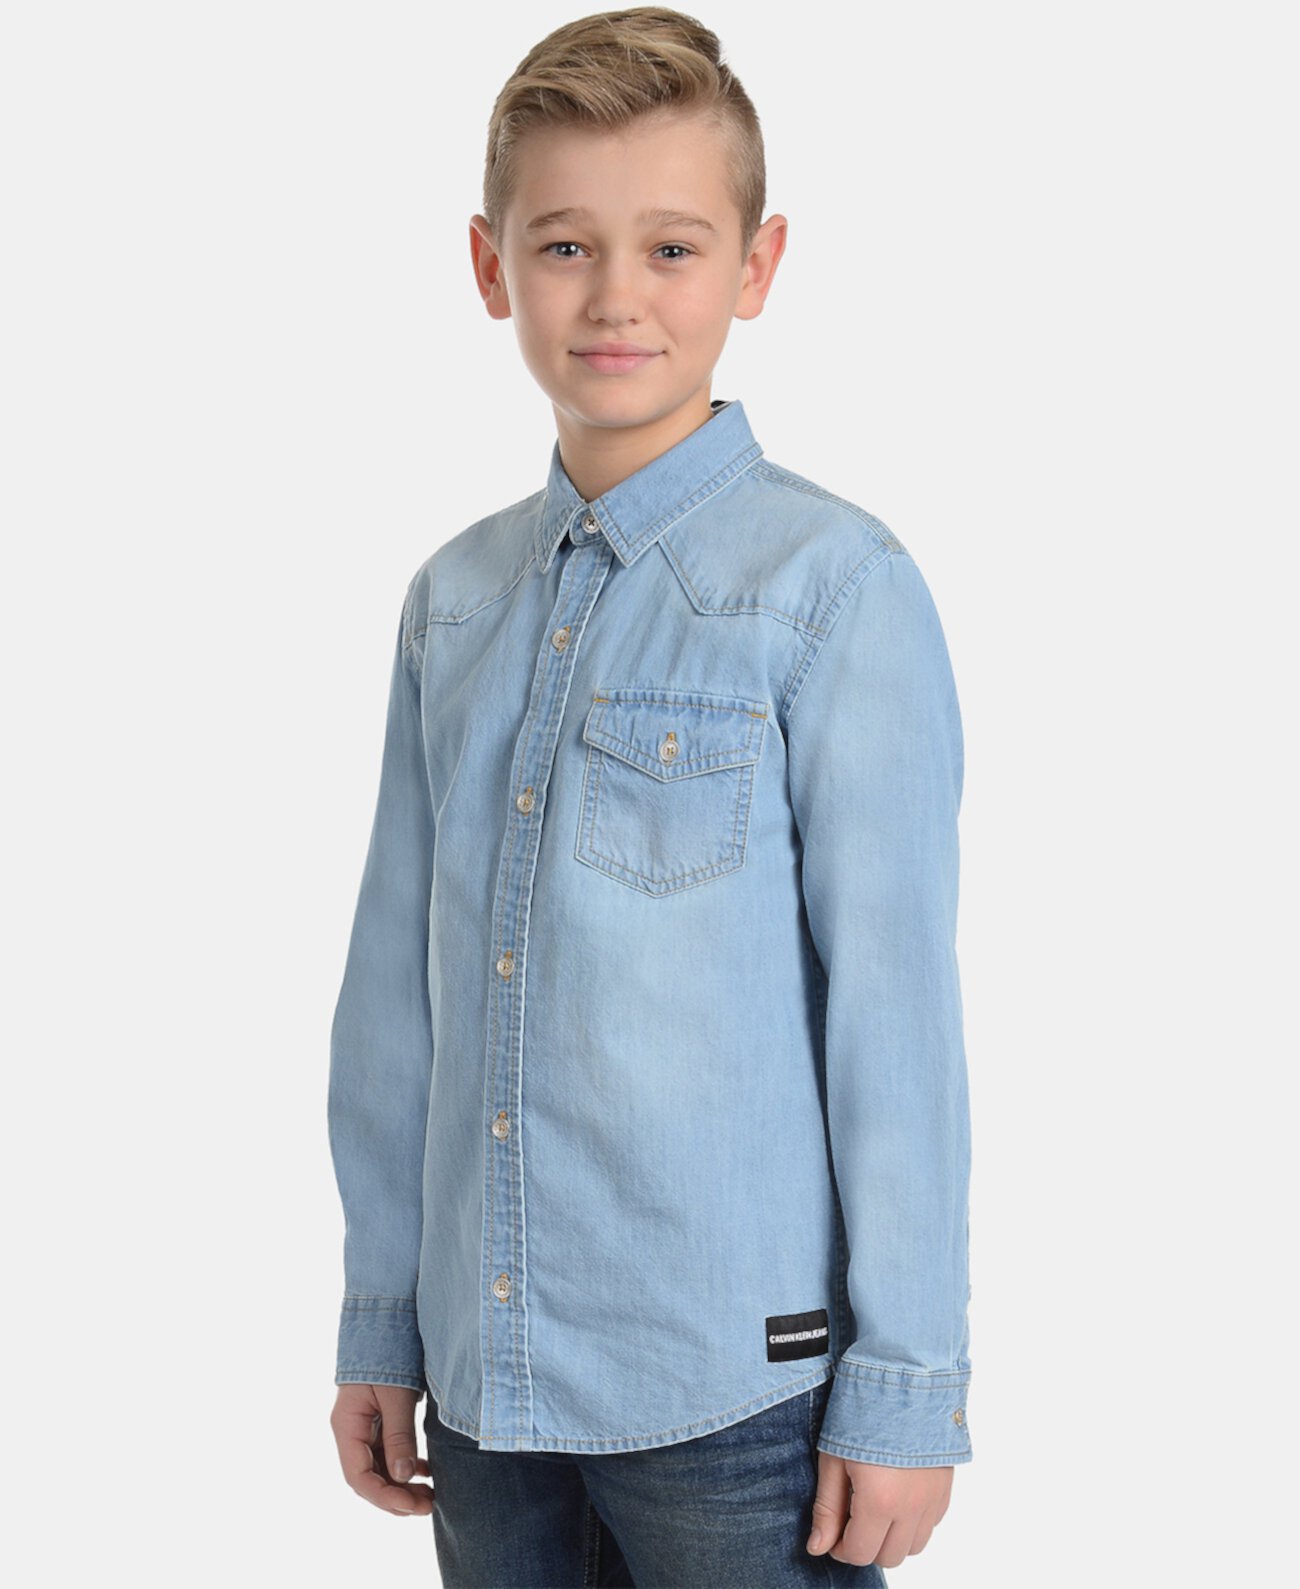 Джинсовая рубашка из хлопка с надписью Big Boys Iconic Calvin Klein